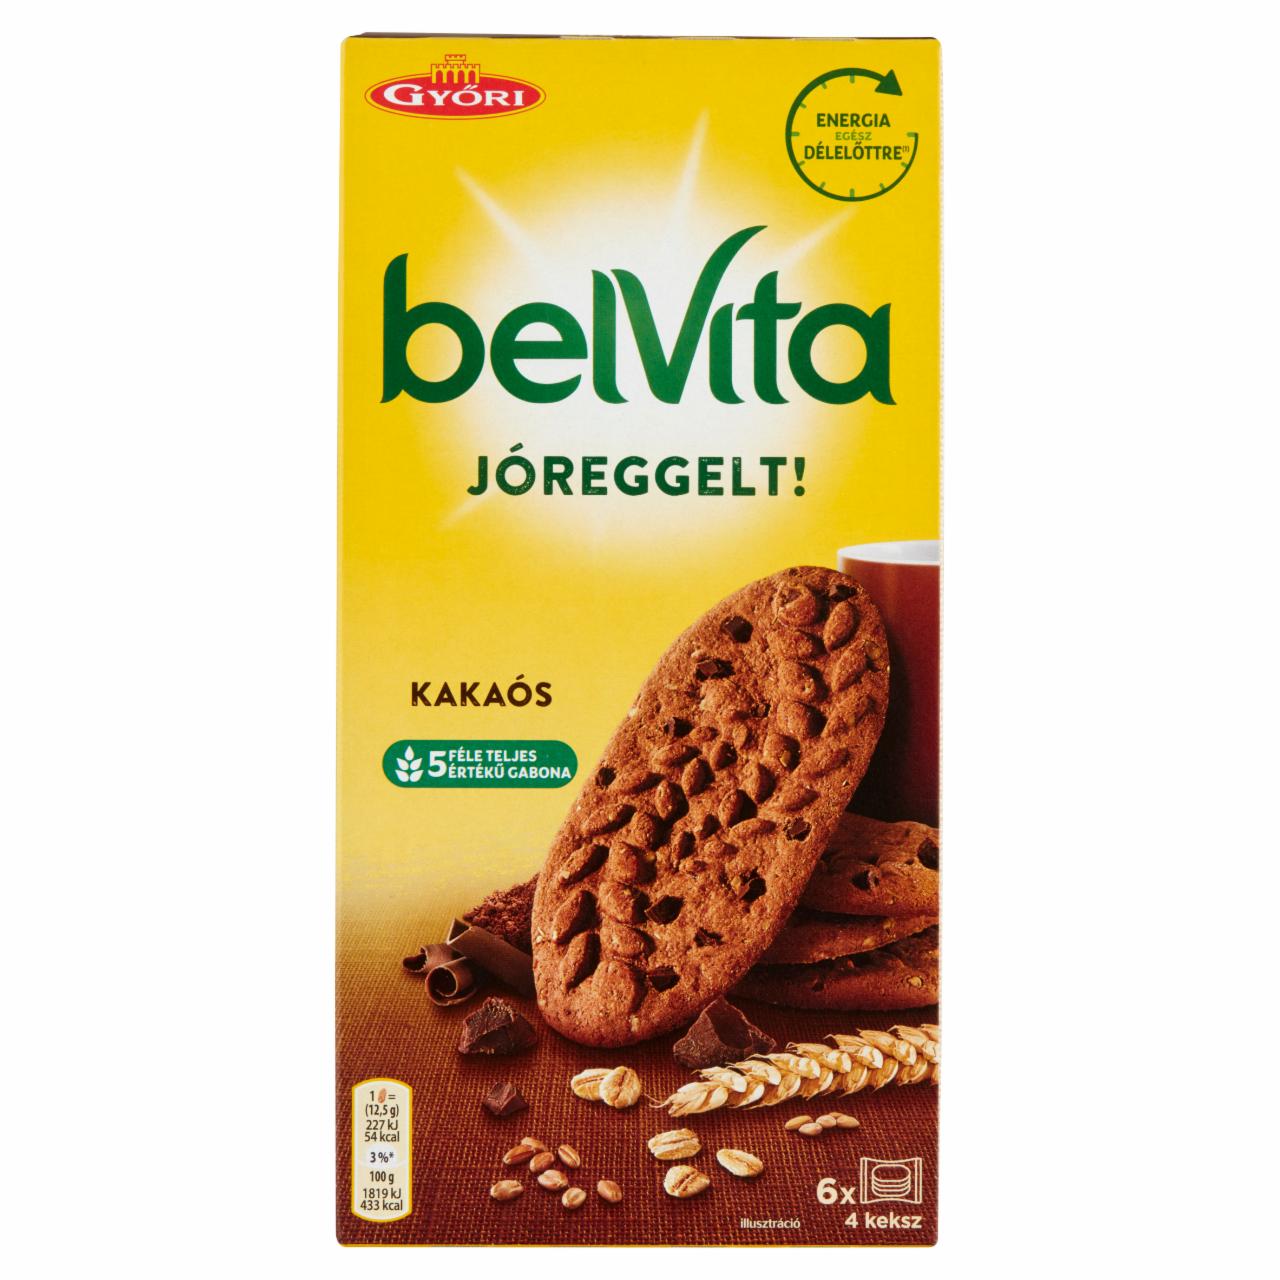 Képek - JóReggelt! kakaós, gabonás, omlós keksz csokoládédarabokkal Belvita